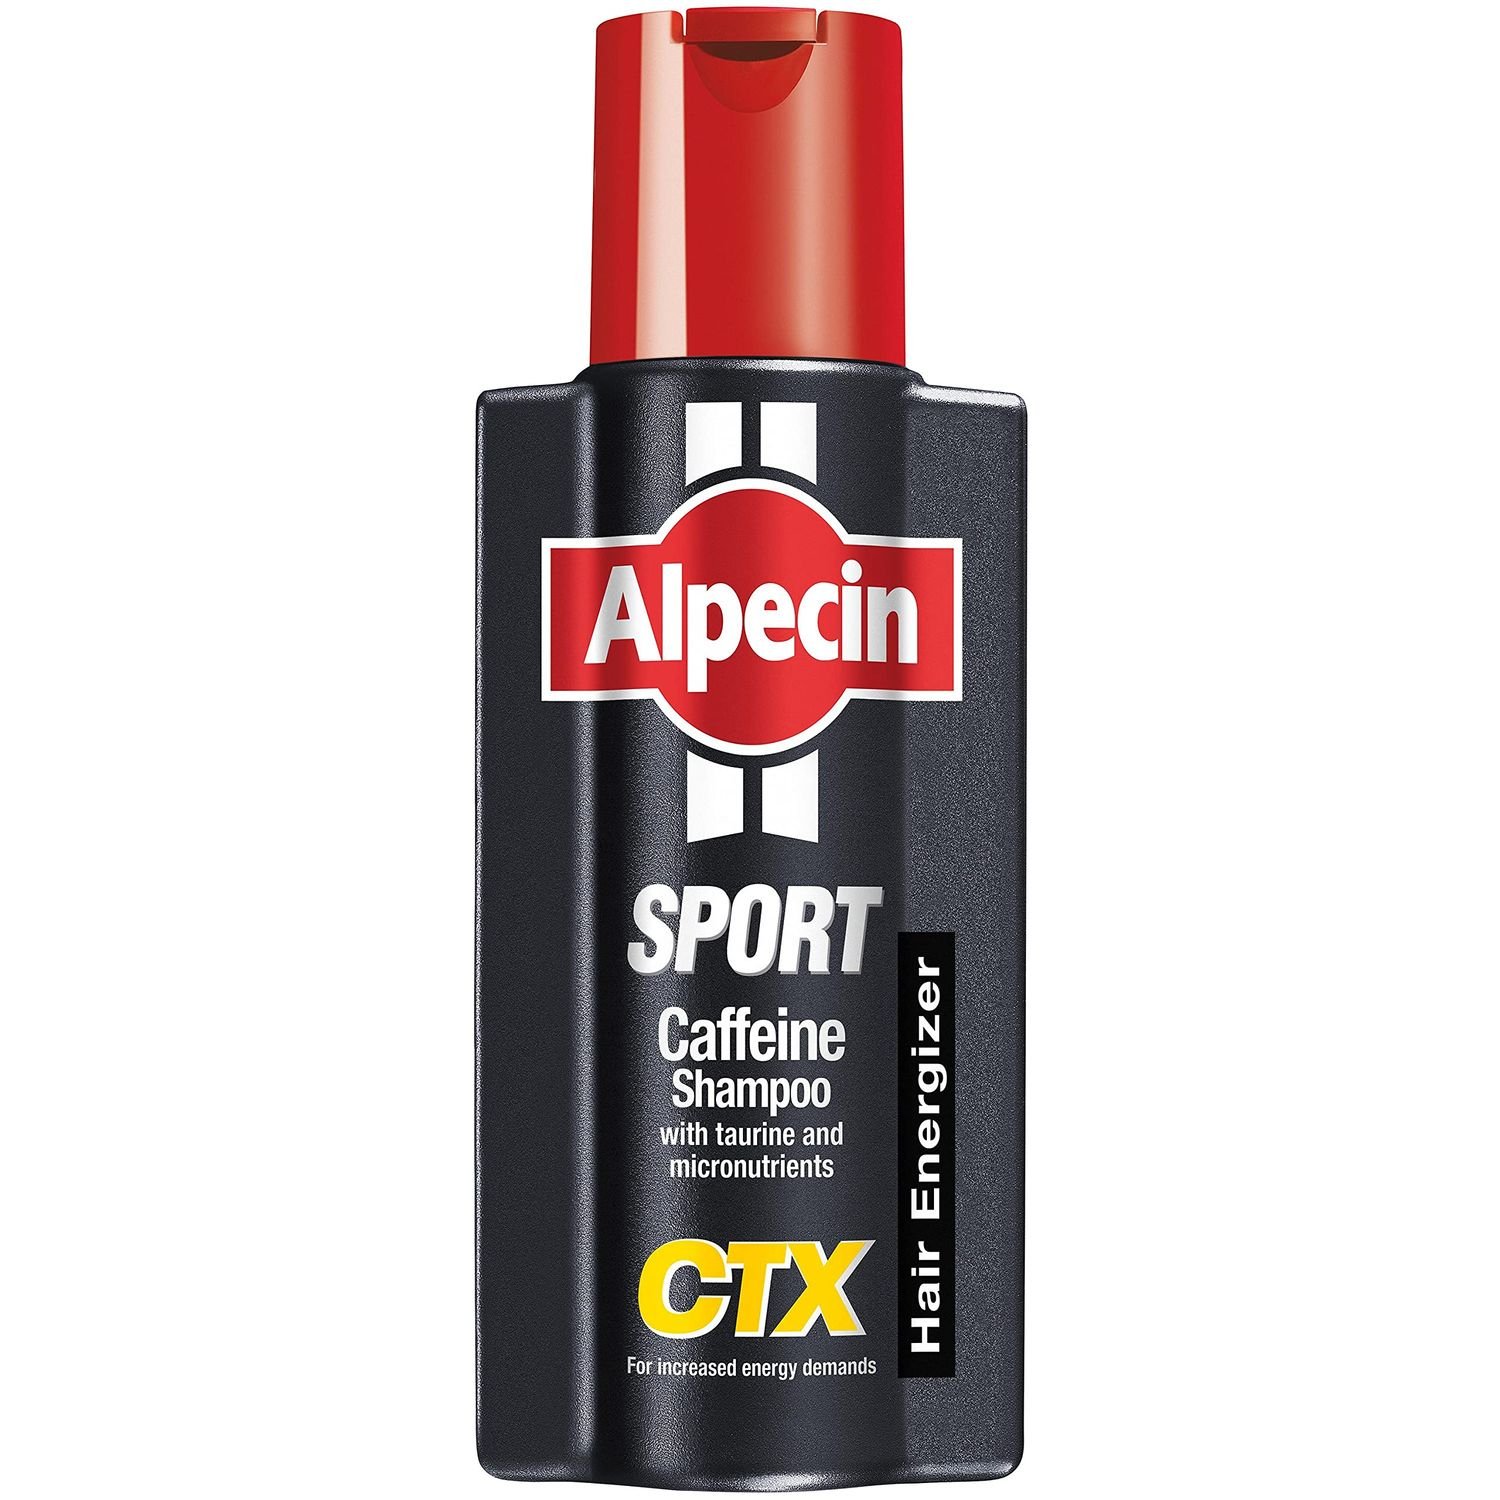 Шампунь с кофеином Alpecin Coffein Sport CTX, против выпадения волос при интенсивной потере энергии, 250 мл - фото 1